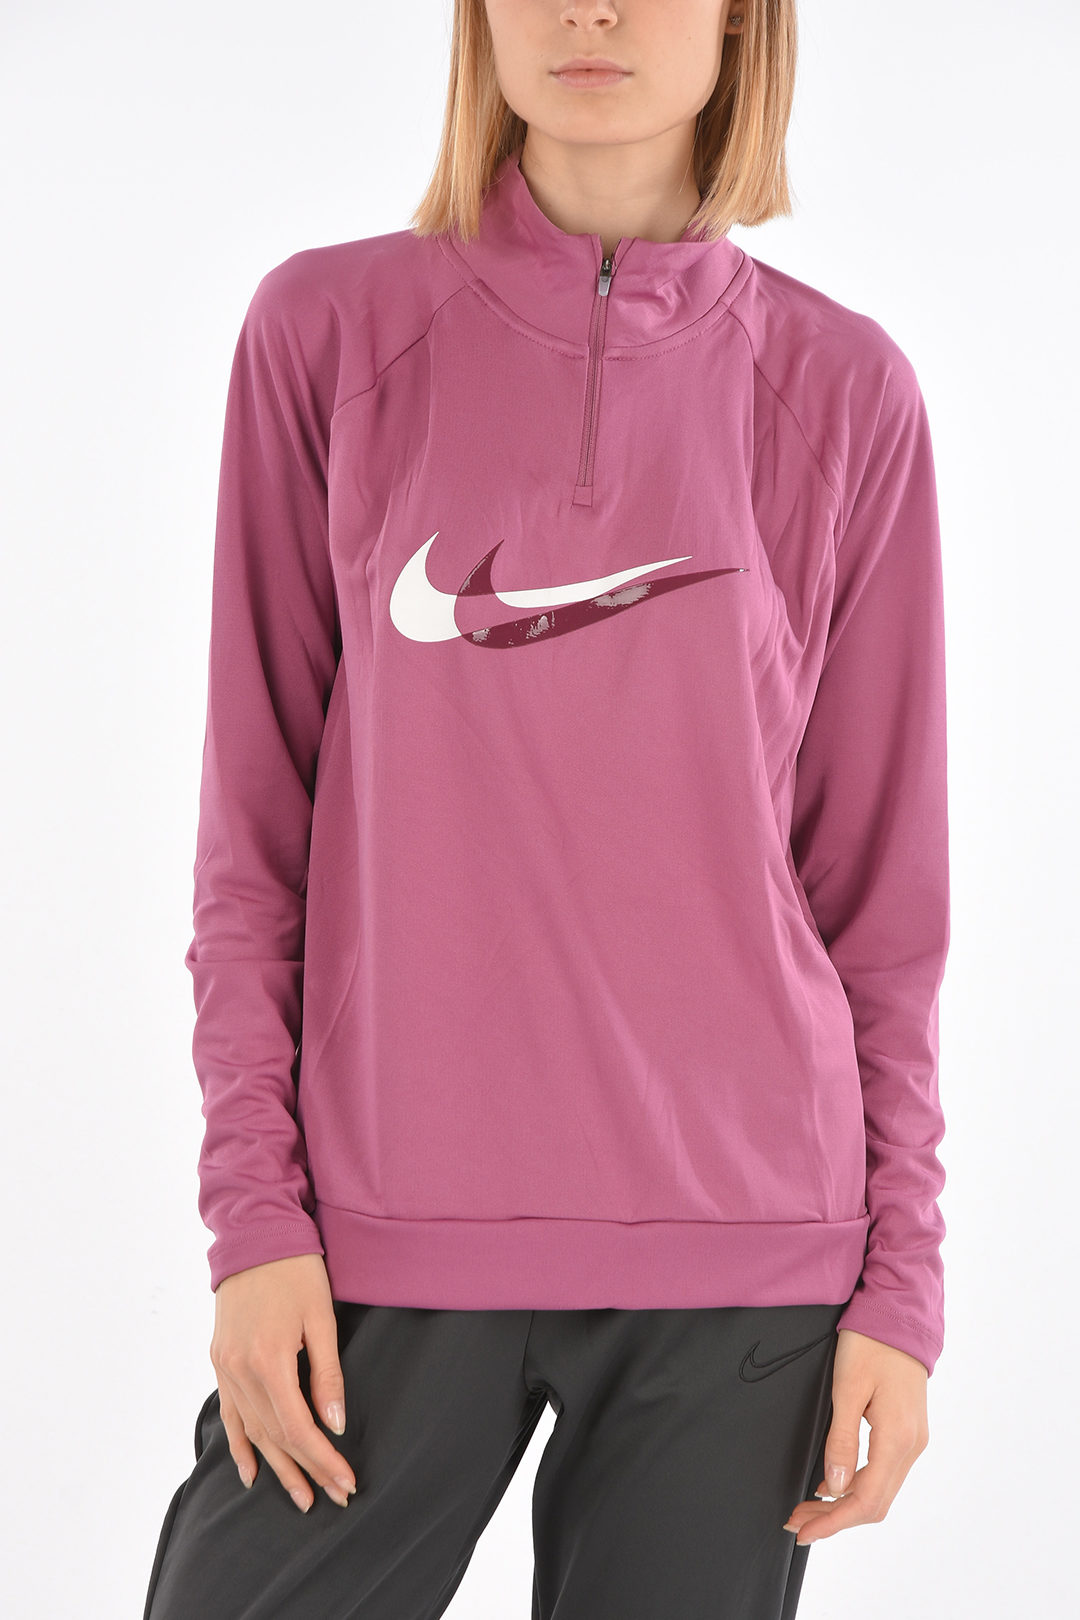 Wordt erger wandelen Foto Nike Turtleneck Dry Fit Sweatshirt women - Glamood Outlet